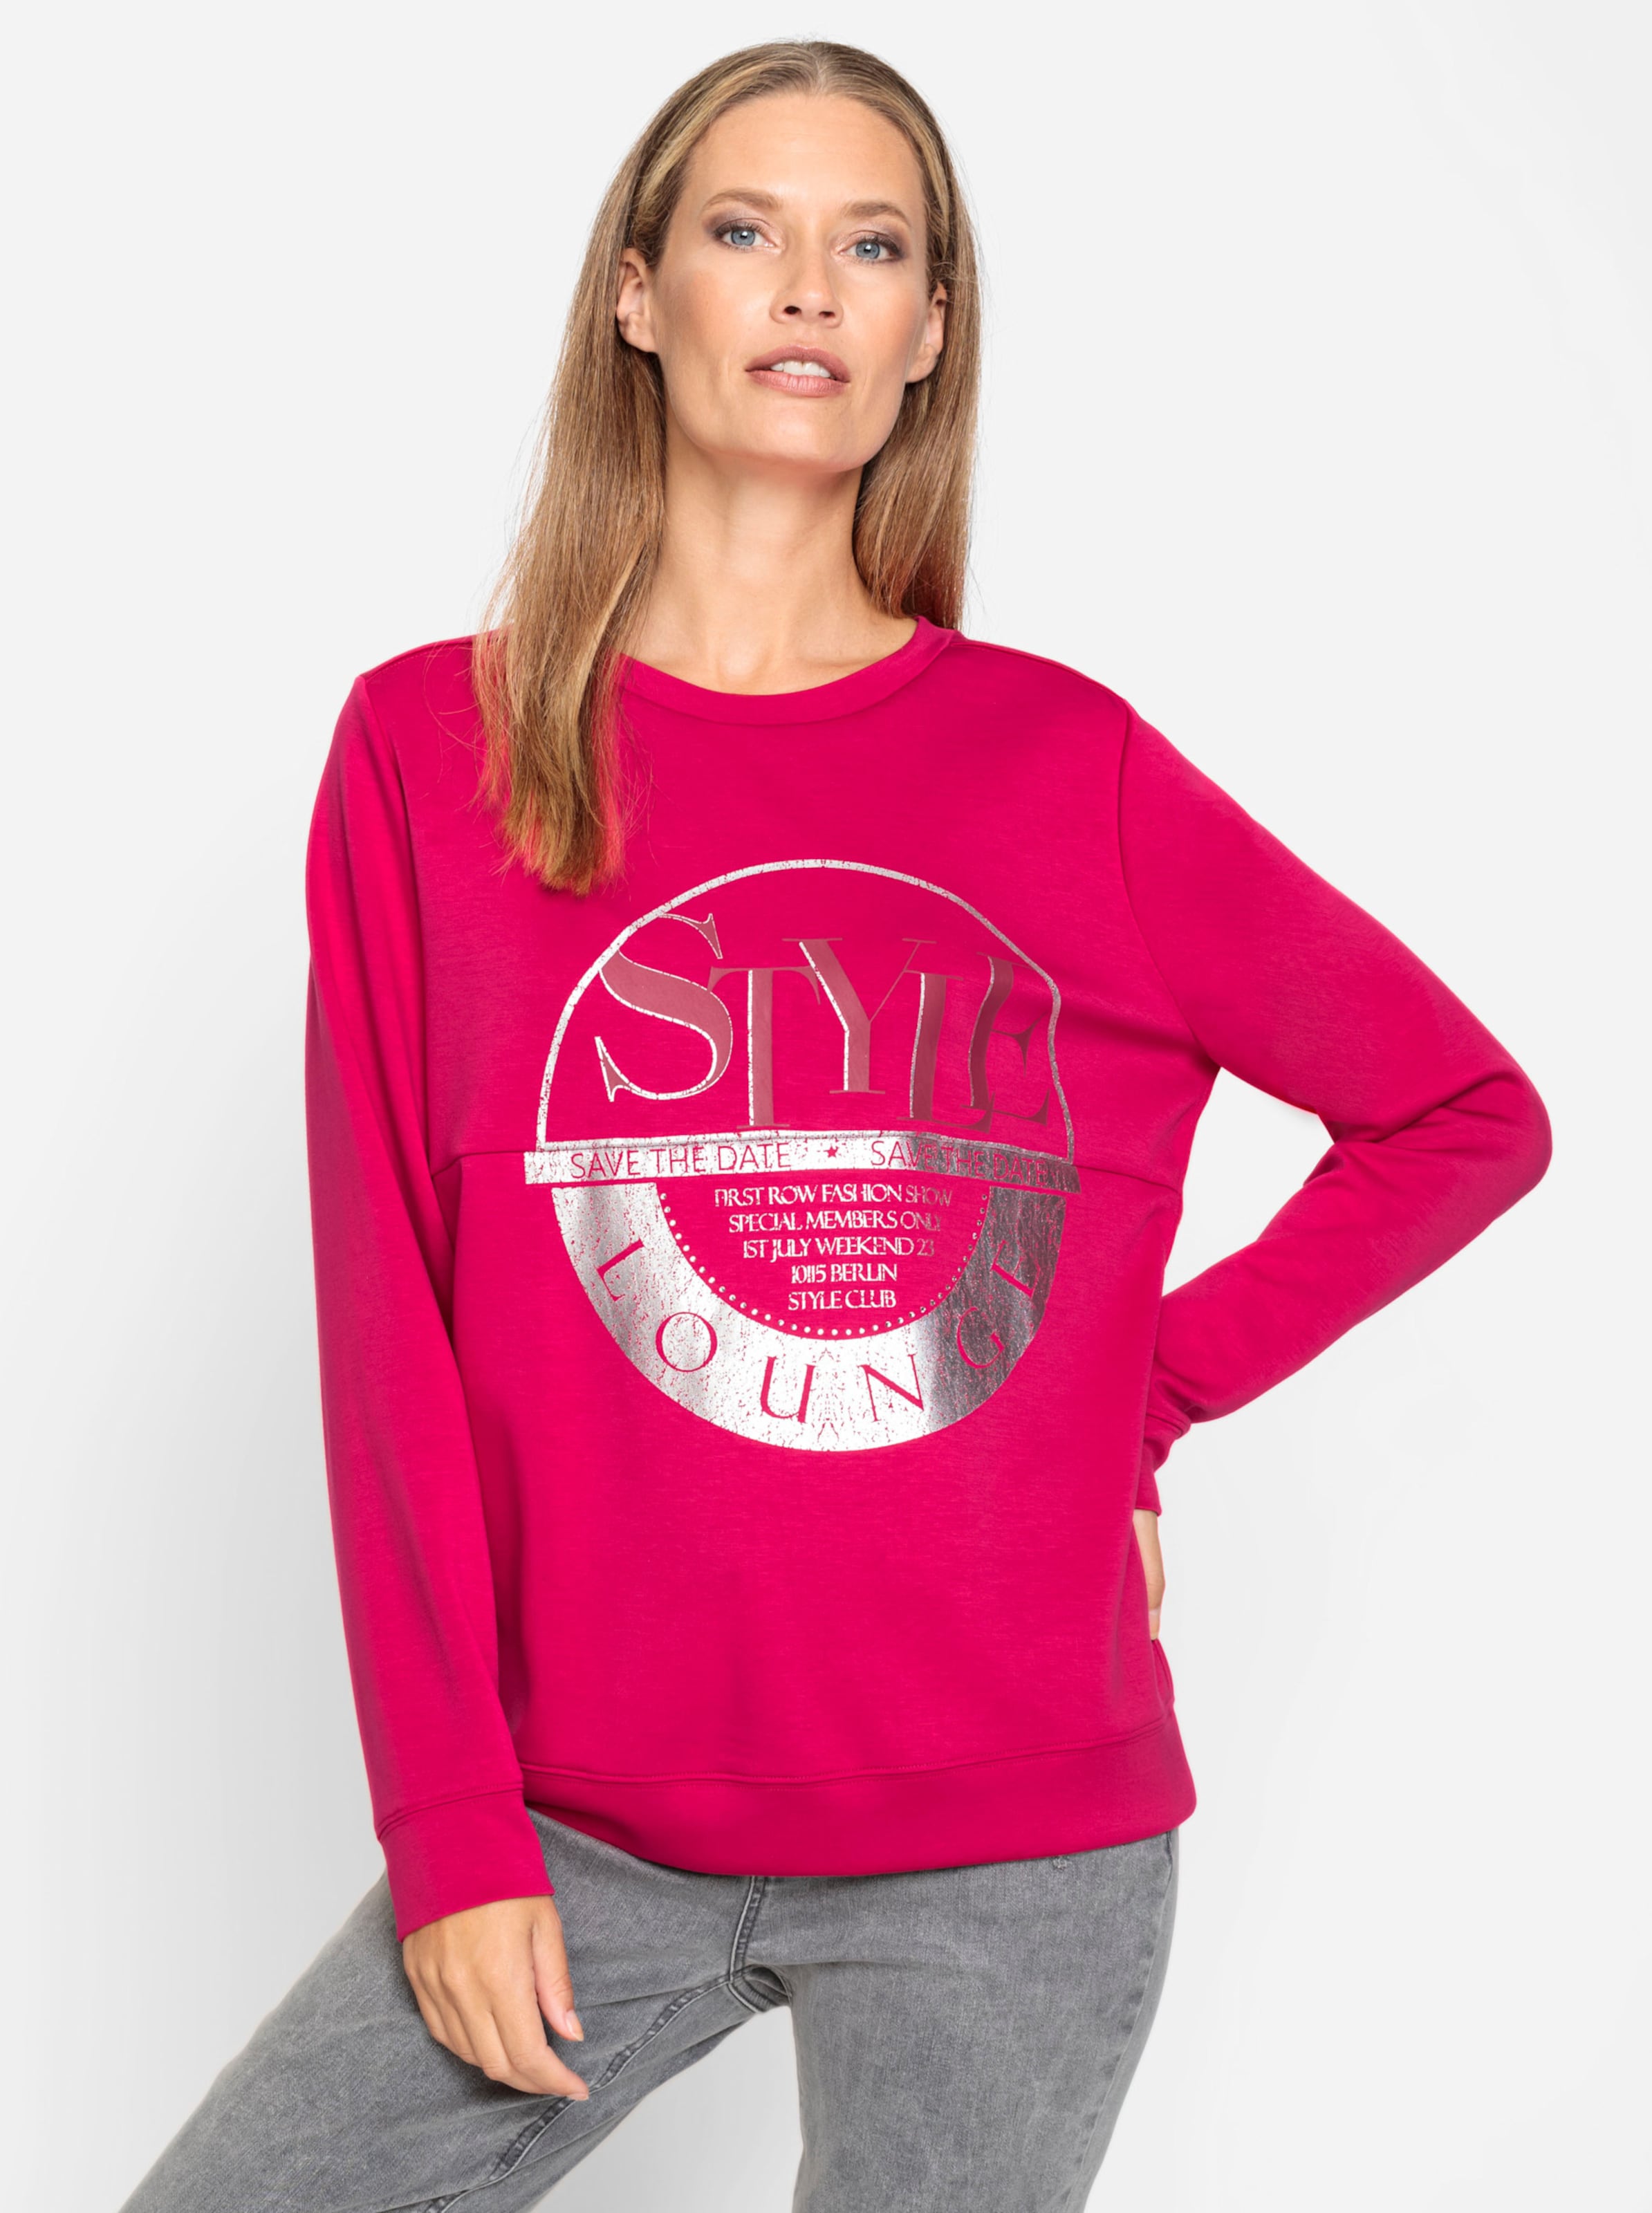 Be So günstig Kaufen-Sweatshirt in pink von heine. Sweatshirt in pink von heine <![CDATA[Sweatshirt Ganz im Trend und so angenehm zu tragen dank hochwertigem Modal-Mix. In seidig mattem Glanz mit angesagtem, silberfarbenem Druck und dekorativen Glitzersteinchen. Rundhalsaussc